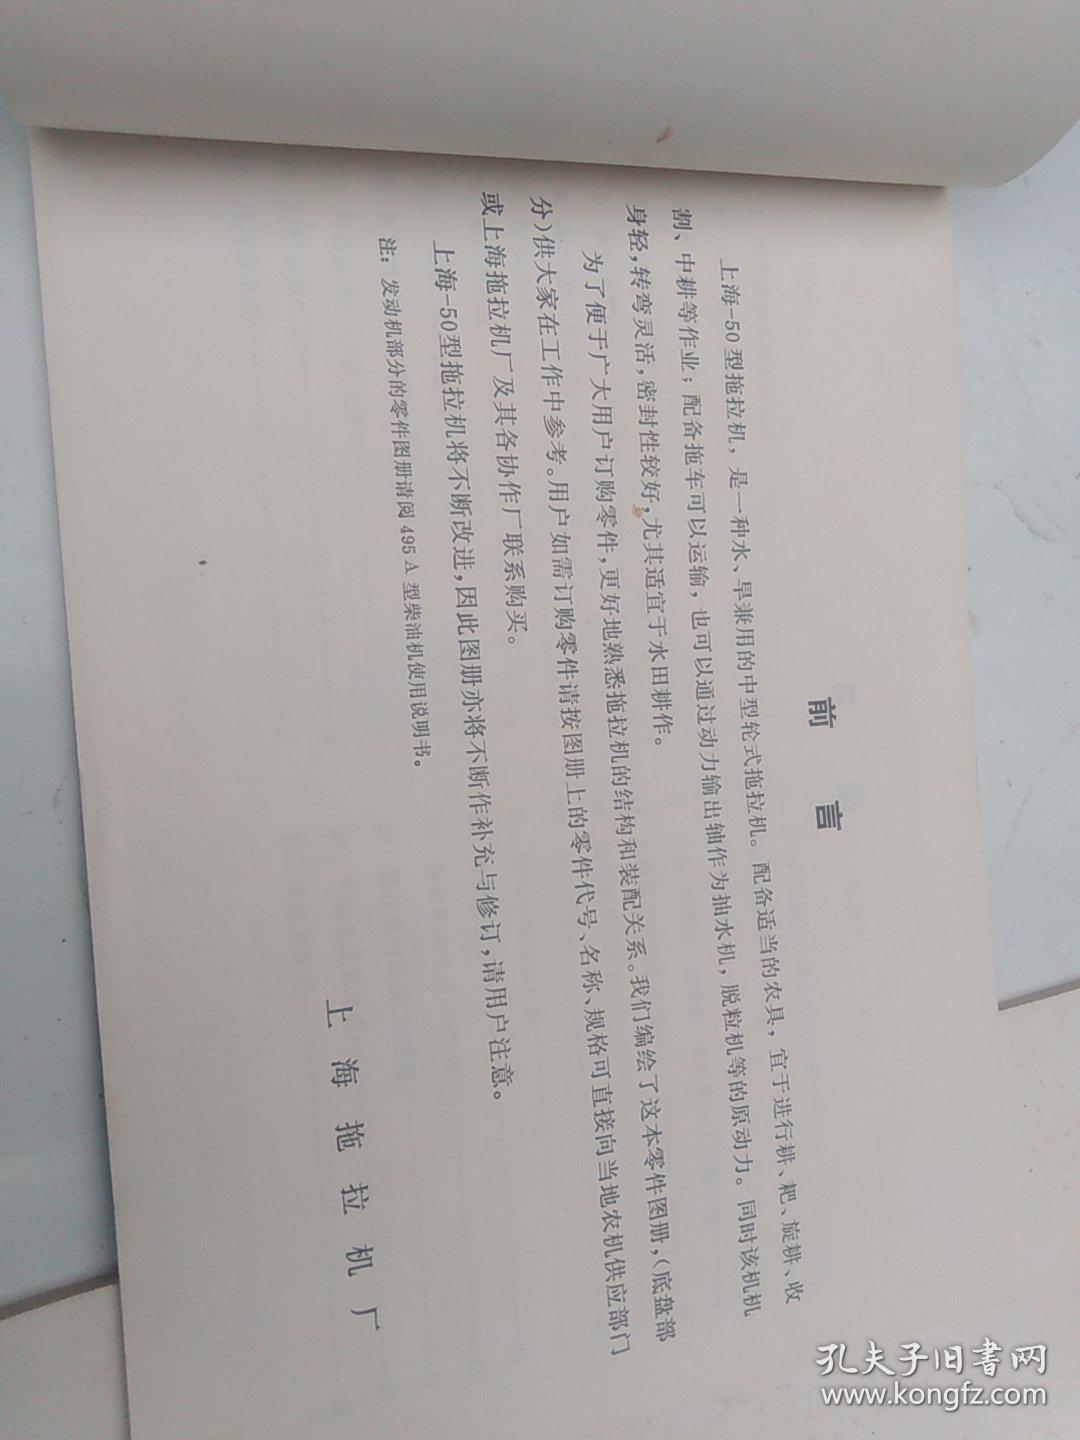 上海SH一50轮式拖拉机使用说明书、零件图册(两册合售)